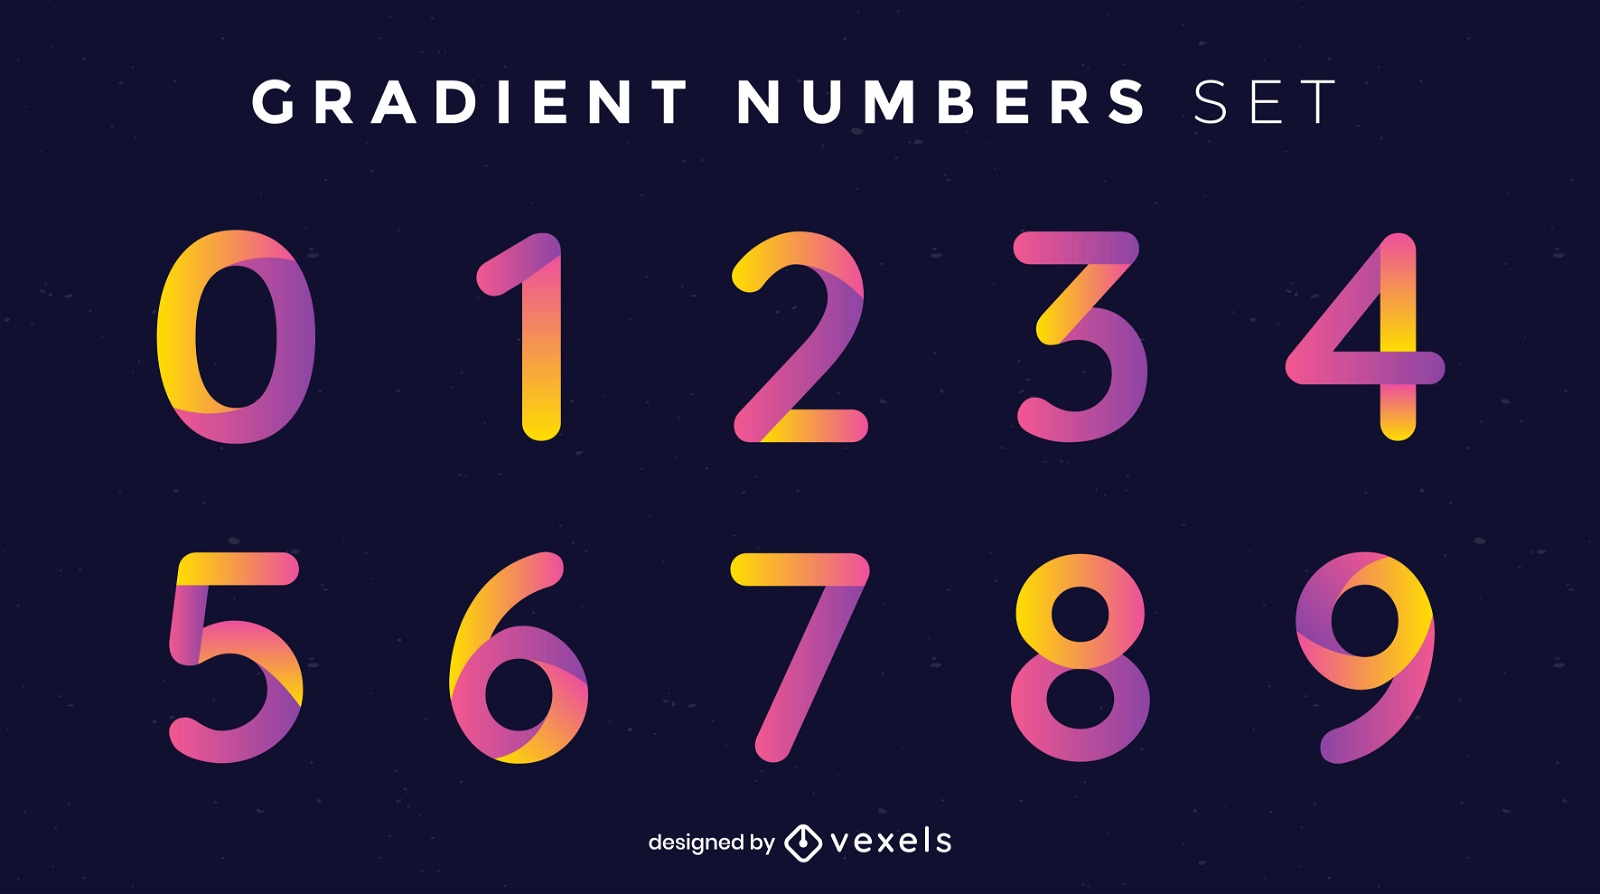 Gradient numbers set